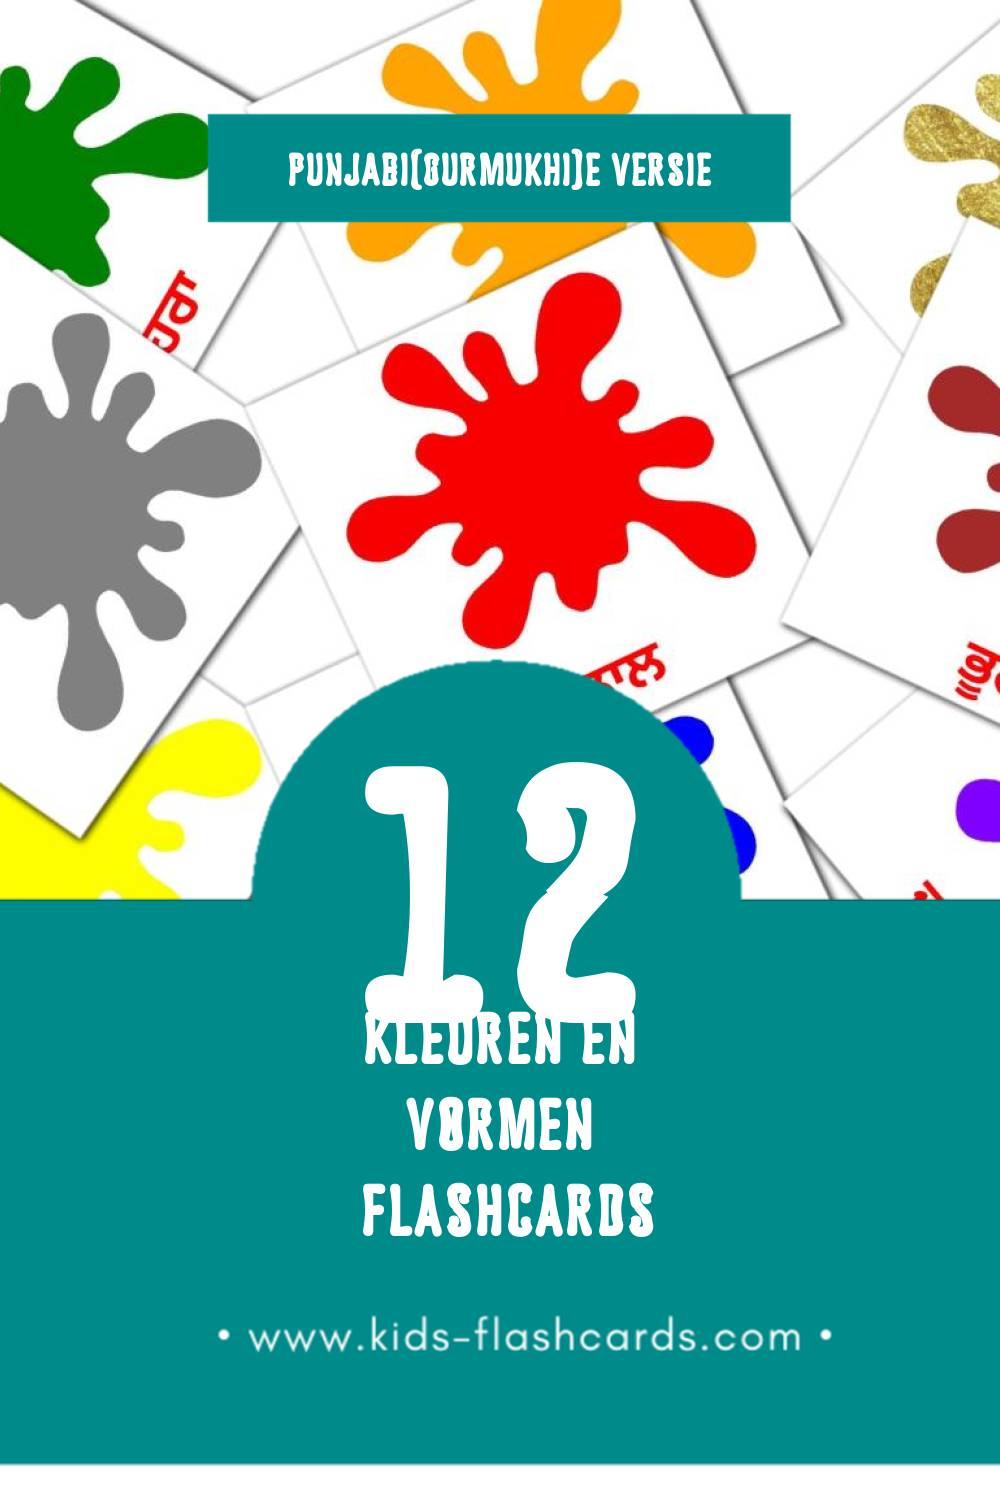 Visuele ਰੰਗ ਅਤੇ ਆਕਾਰ Flashcards voor Kleuters (12 kaarten in het Punjabi(gurmukhi))